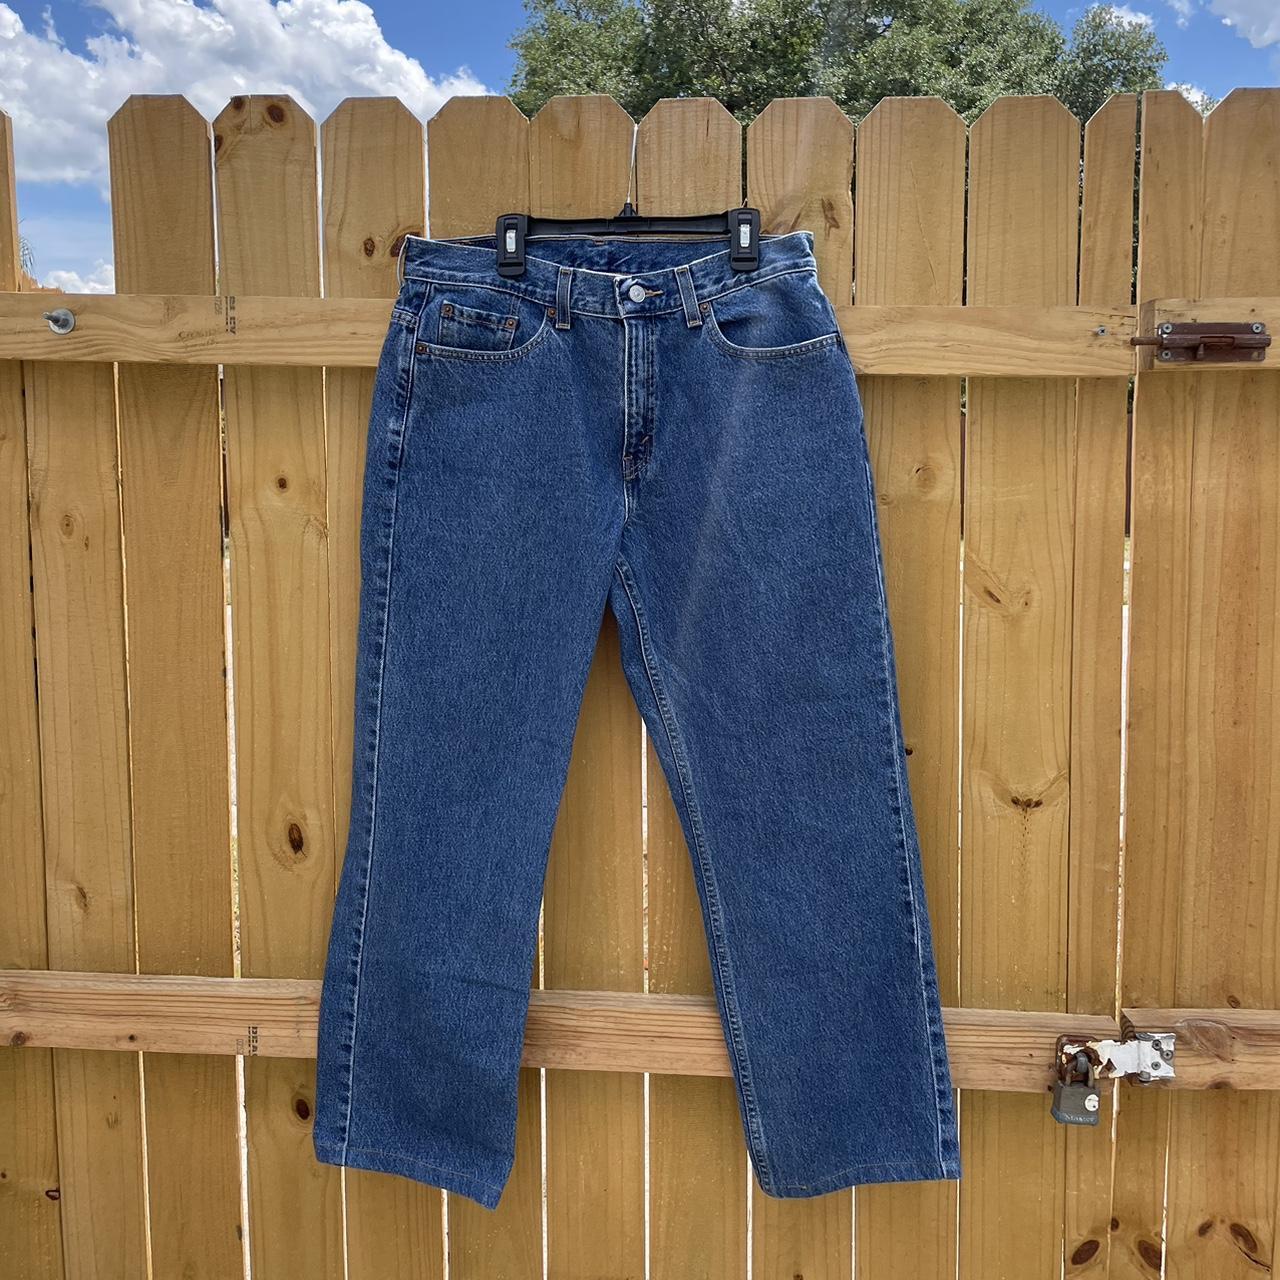 505 levi’s jeans -dark wash - regular fit 🌟 No... - Depop